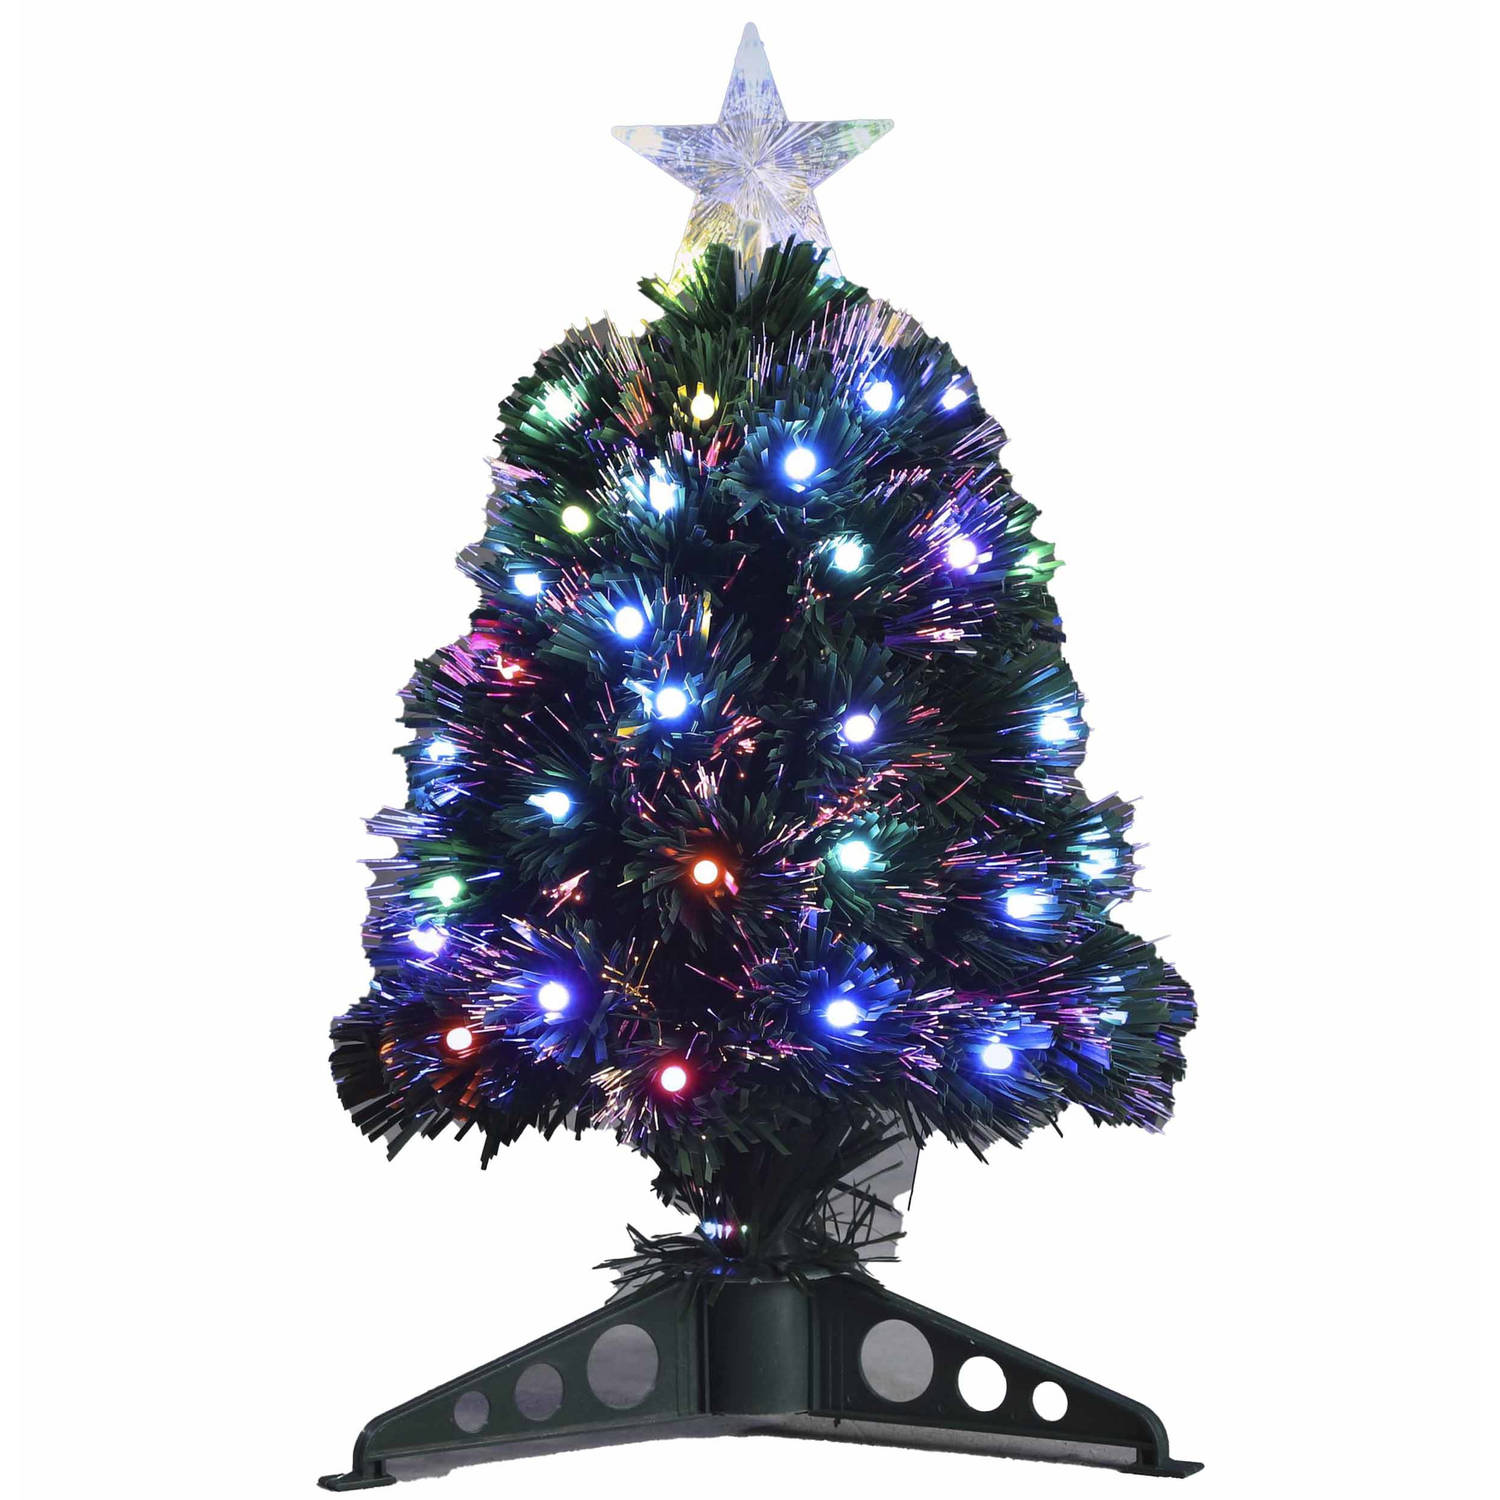 Kerstboompje met 45 gekleurde LED lampjes 45 cm - Kunstkerstboom